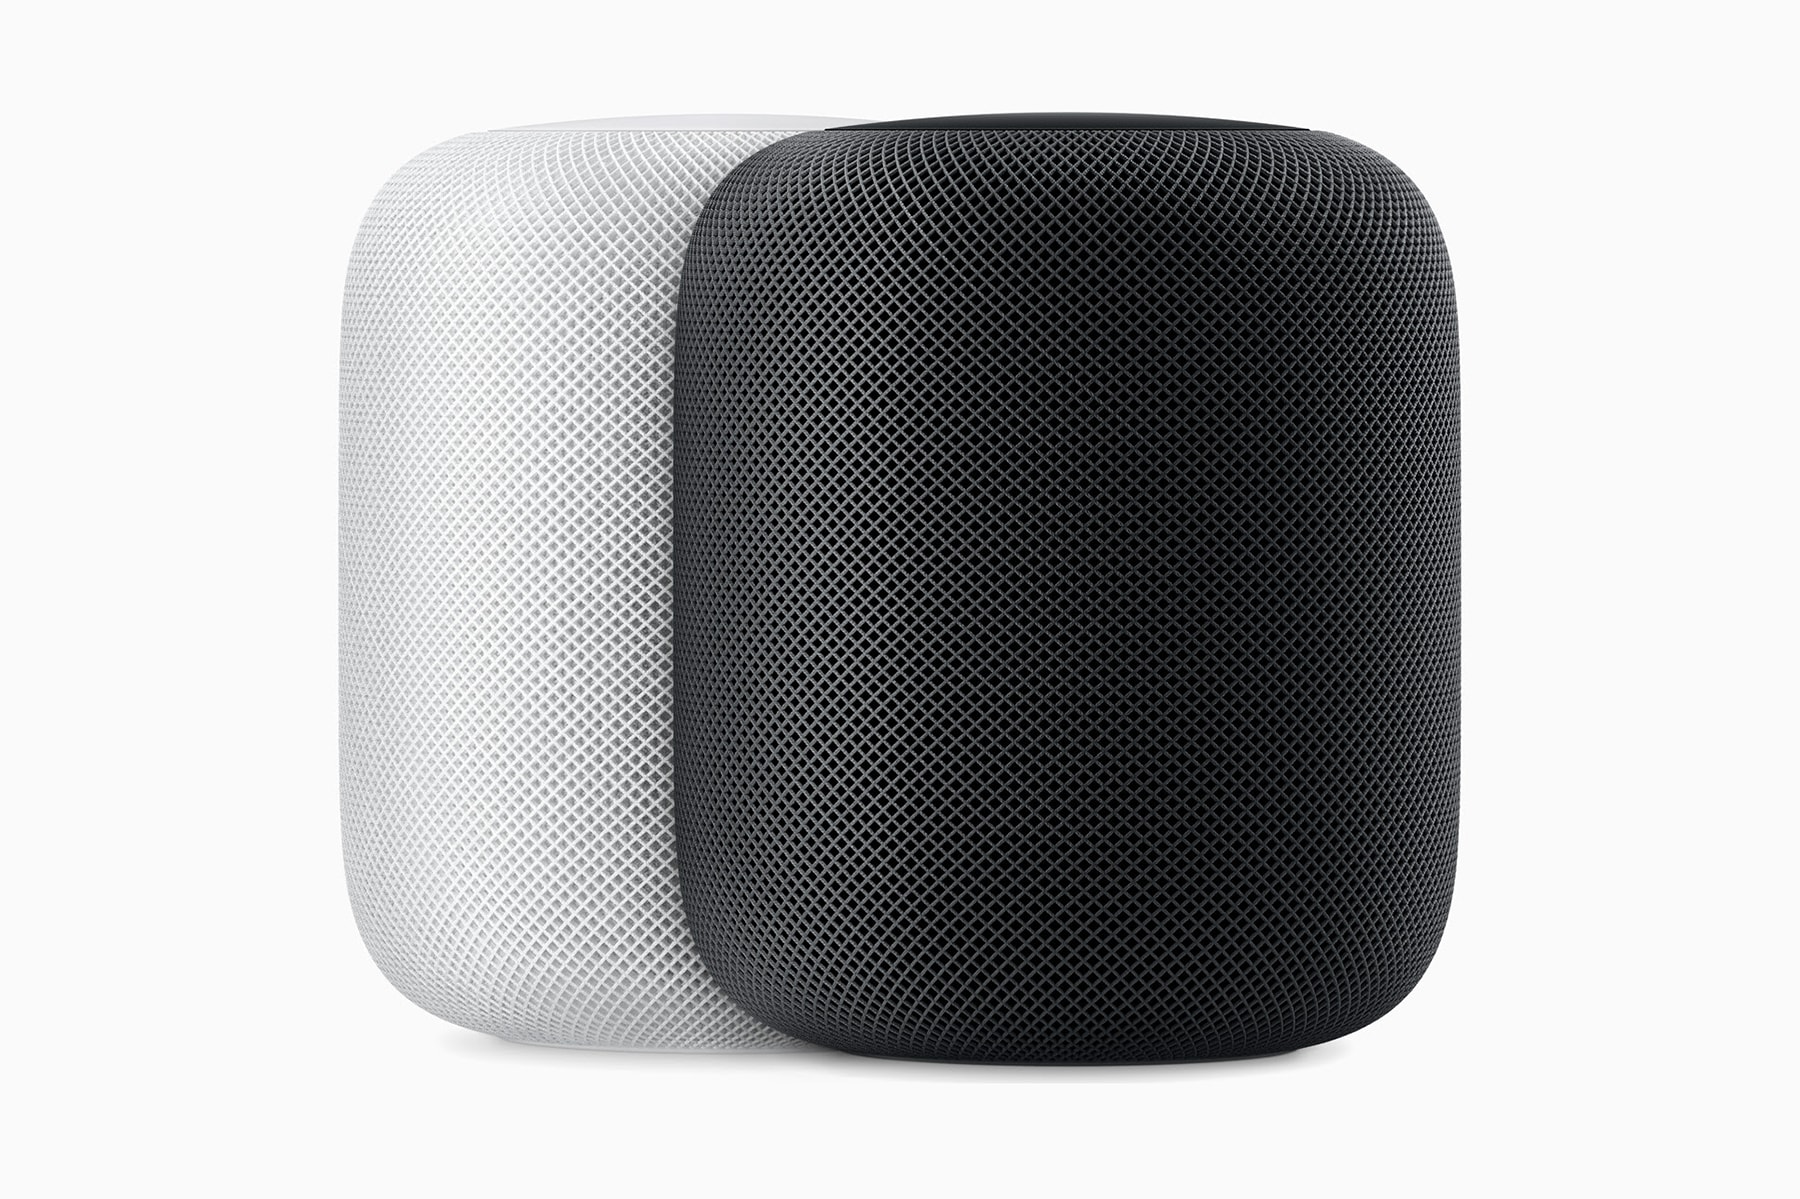 HomePod ホームポッド オンライン Apple アップル ホワイト スペースグレイ 性能 評判 機能 レビュー 口コミ